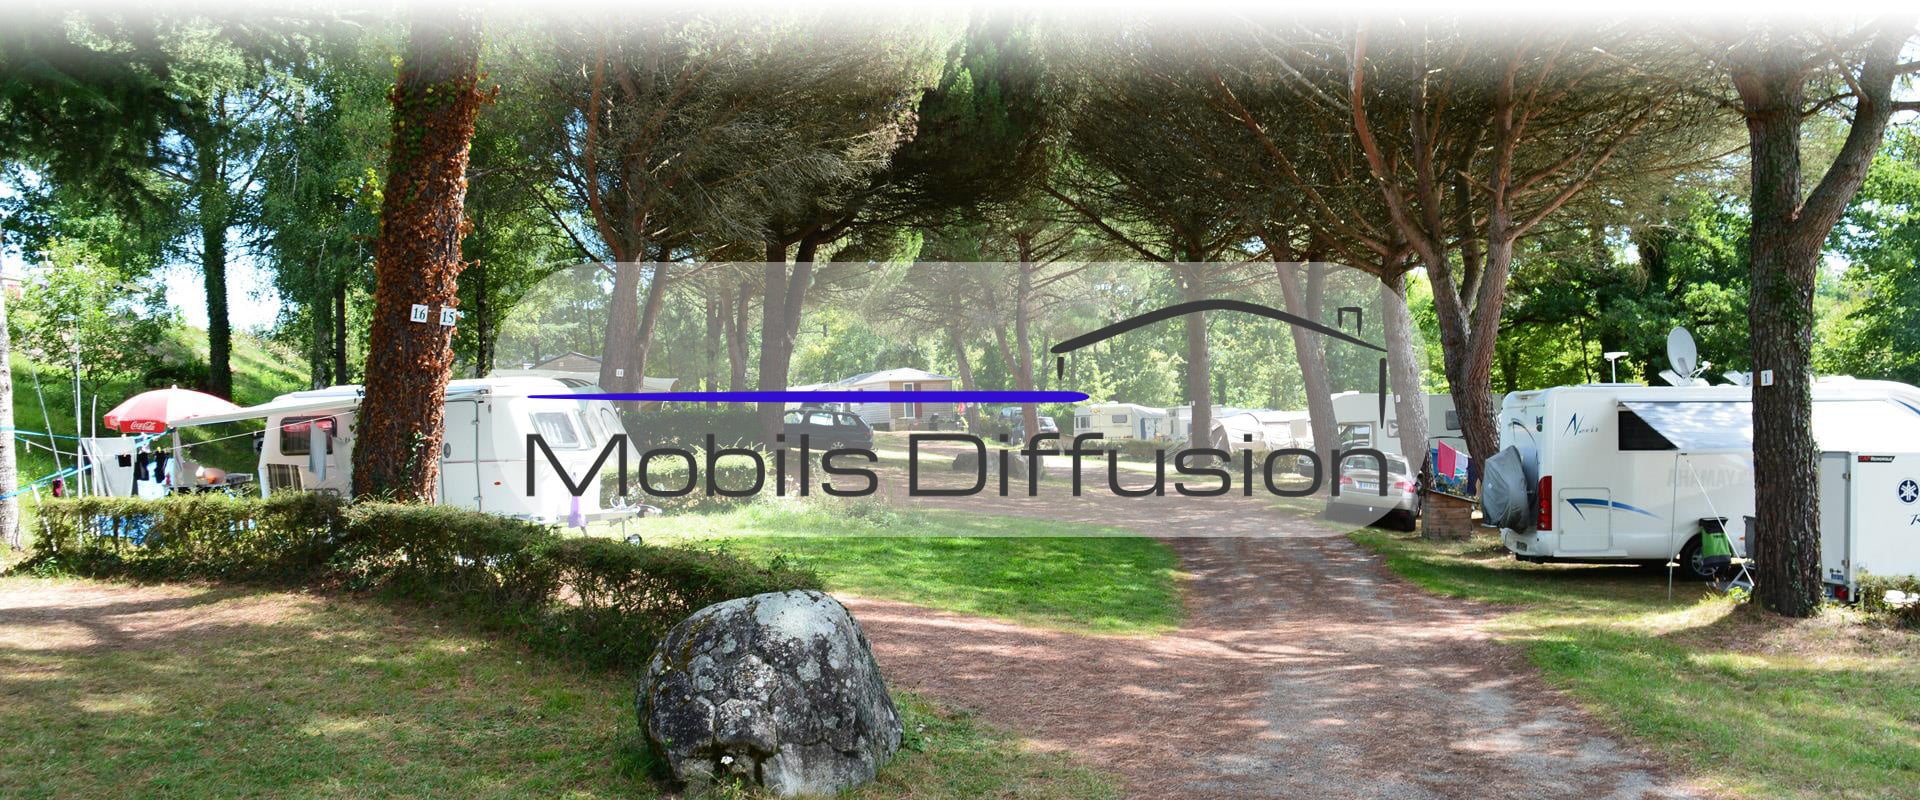 Mobils Diffusion - Vente et achat de mobil-home dans l’Aveyron (12)